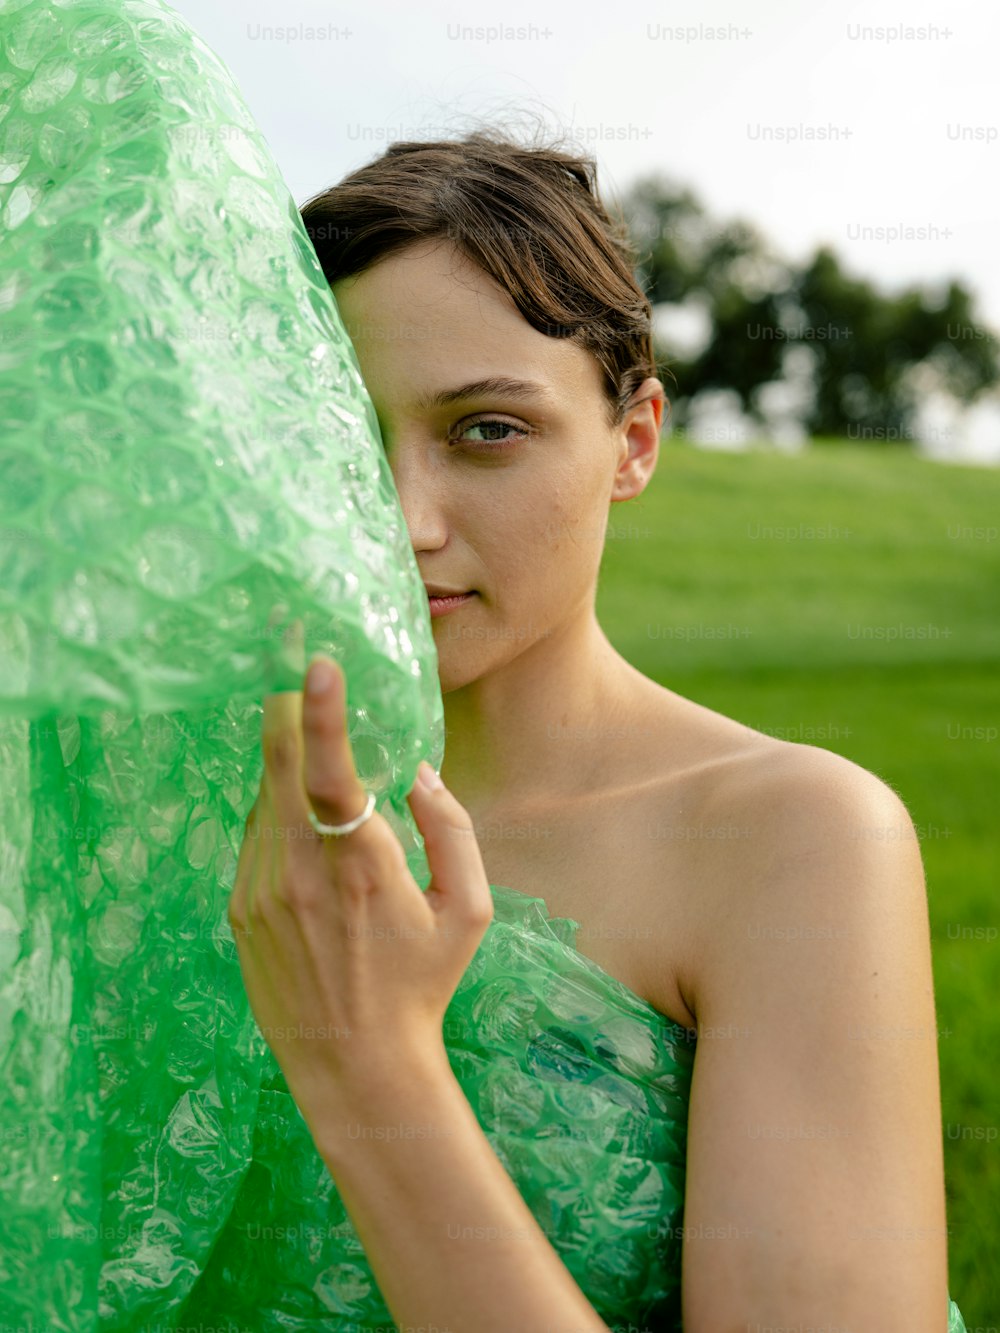 大きな緑色の物体を持つ緑のドレスを着た女性